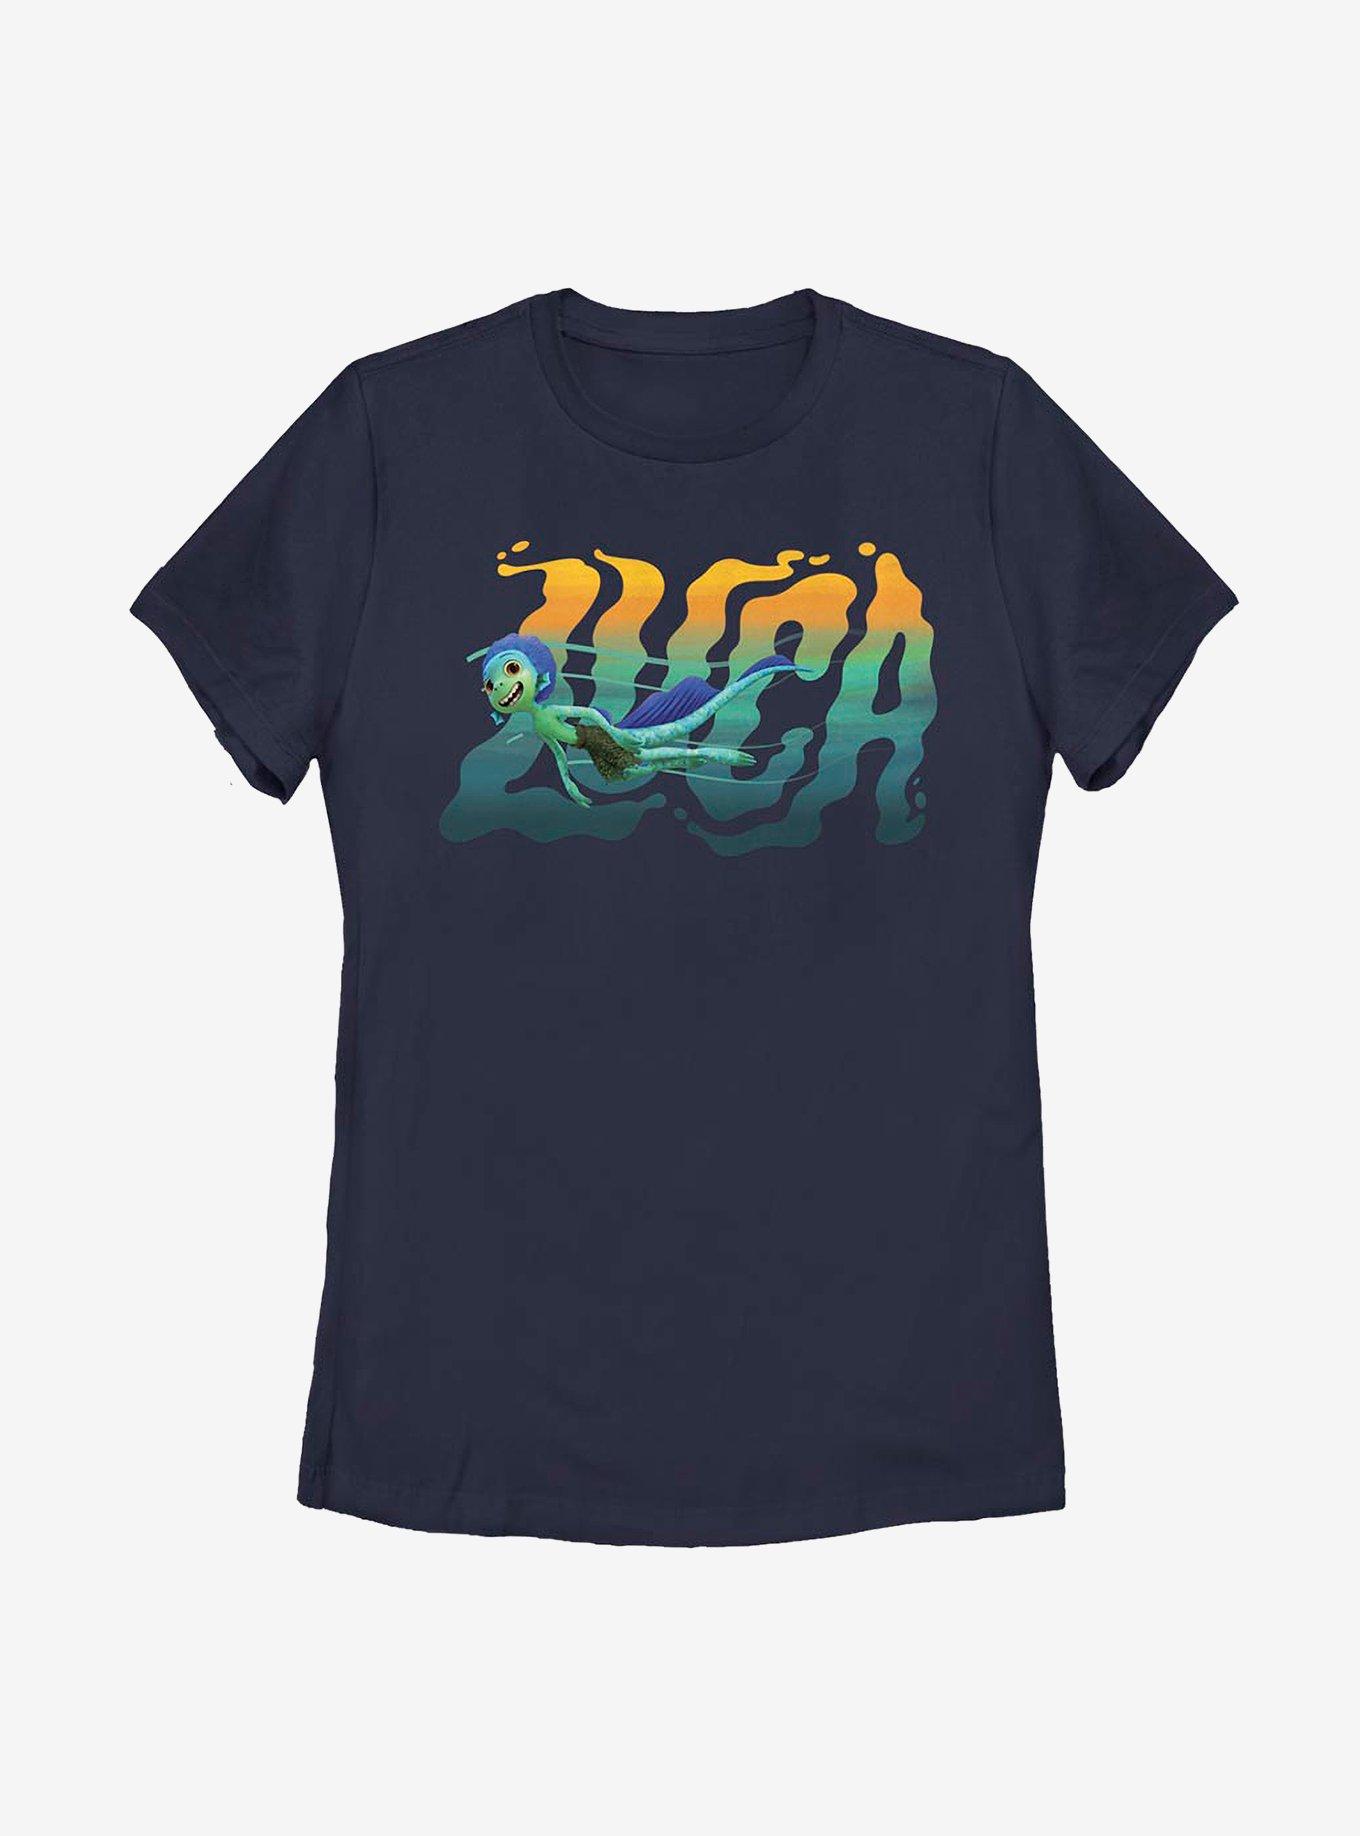 Disney Pixar Luca Swimming Womens T-Shirt, NAVY, hi-res